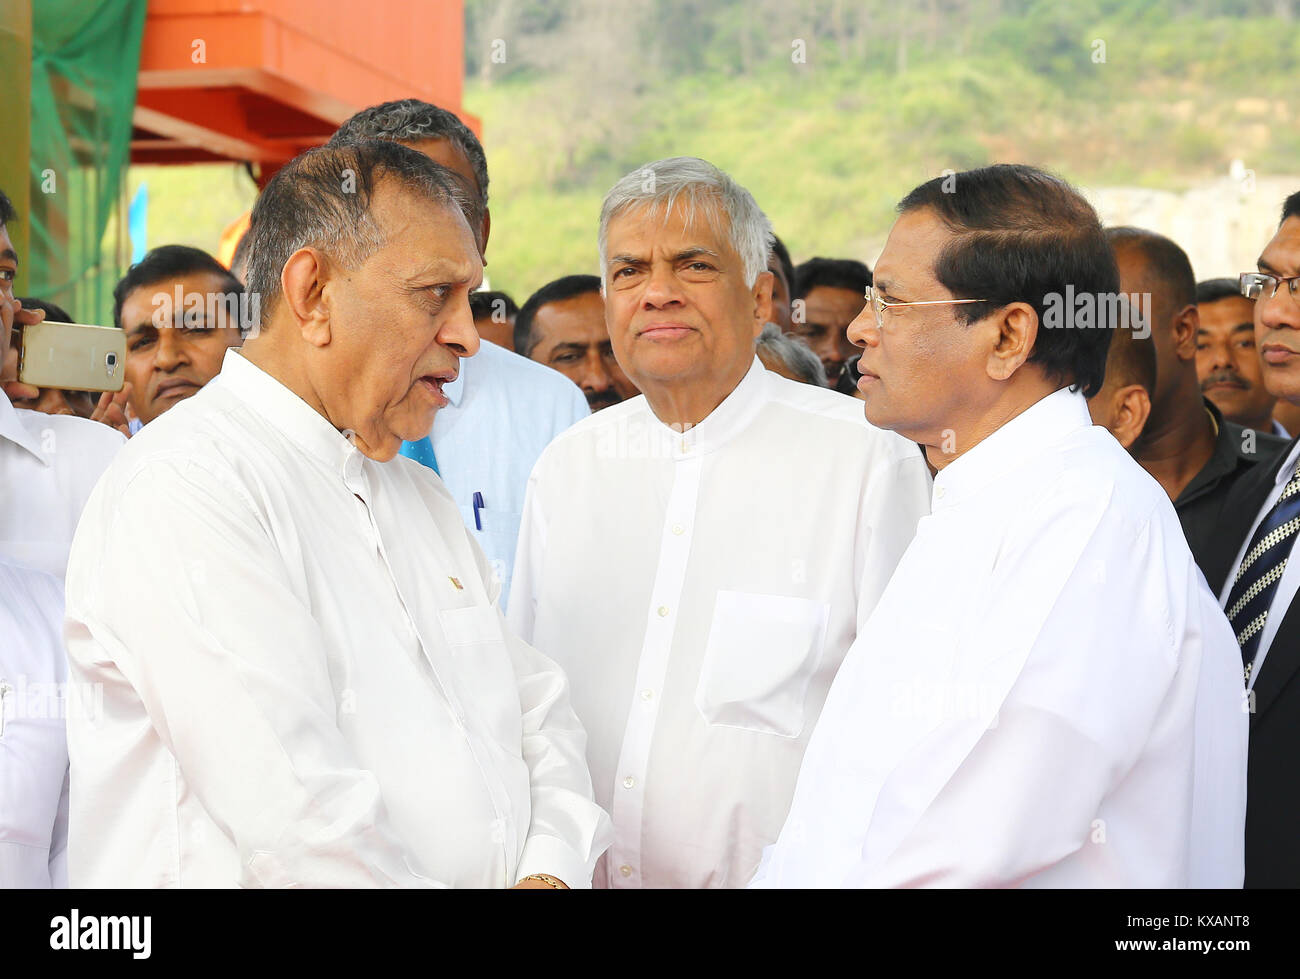 Le Sri Lanka. 05Th Jan, 2018. Le Sri Lanka. 05Th Jan, 2018. Sri Lanka président Maithripala Sirisena (R) Premier Ministre Ranil Wickremesinghe (M) et le président du Parlement sri-lankais Karu Jayasuriya(L)arrivent pour la cérémonie d'ouverture de l'Moragahakanda Kalu Ganga Projet de développement multi-usage. Credit : Vimukthi Embuldeniya/Alamy Live News Crédit : Vimukthi Embuldeniya/Alamy Live News Banque D'Images